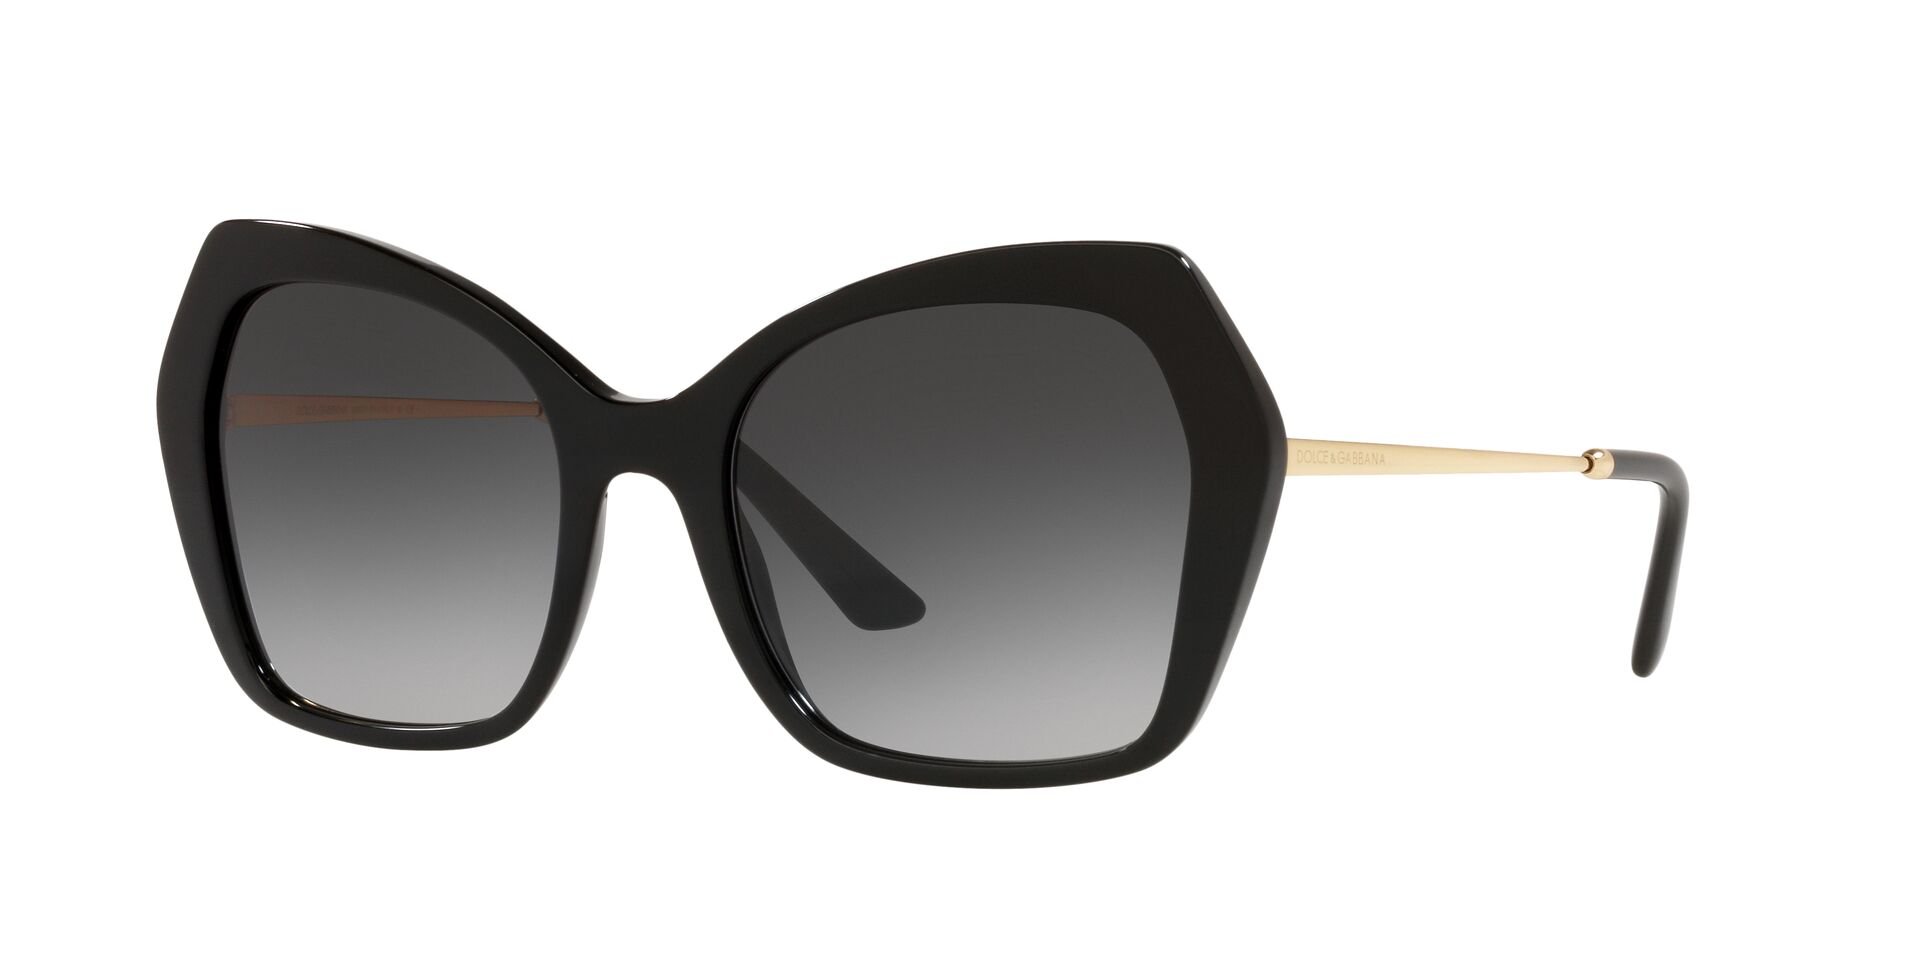 Dolce & Gabbana Sonnenbrille in Schwarz DG4399 501/8G 56